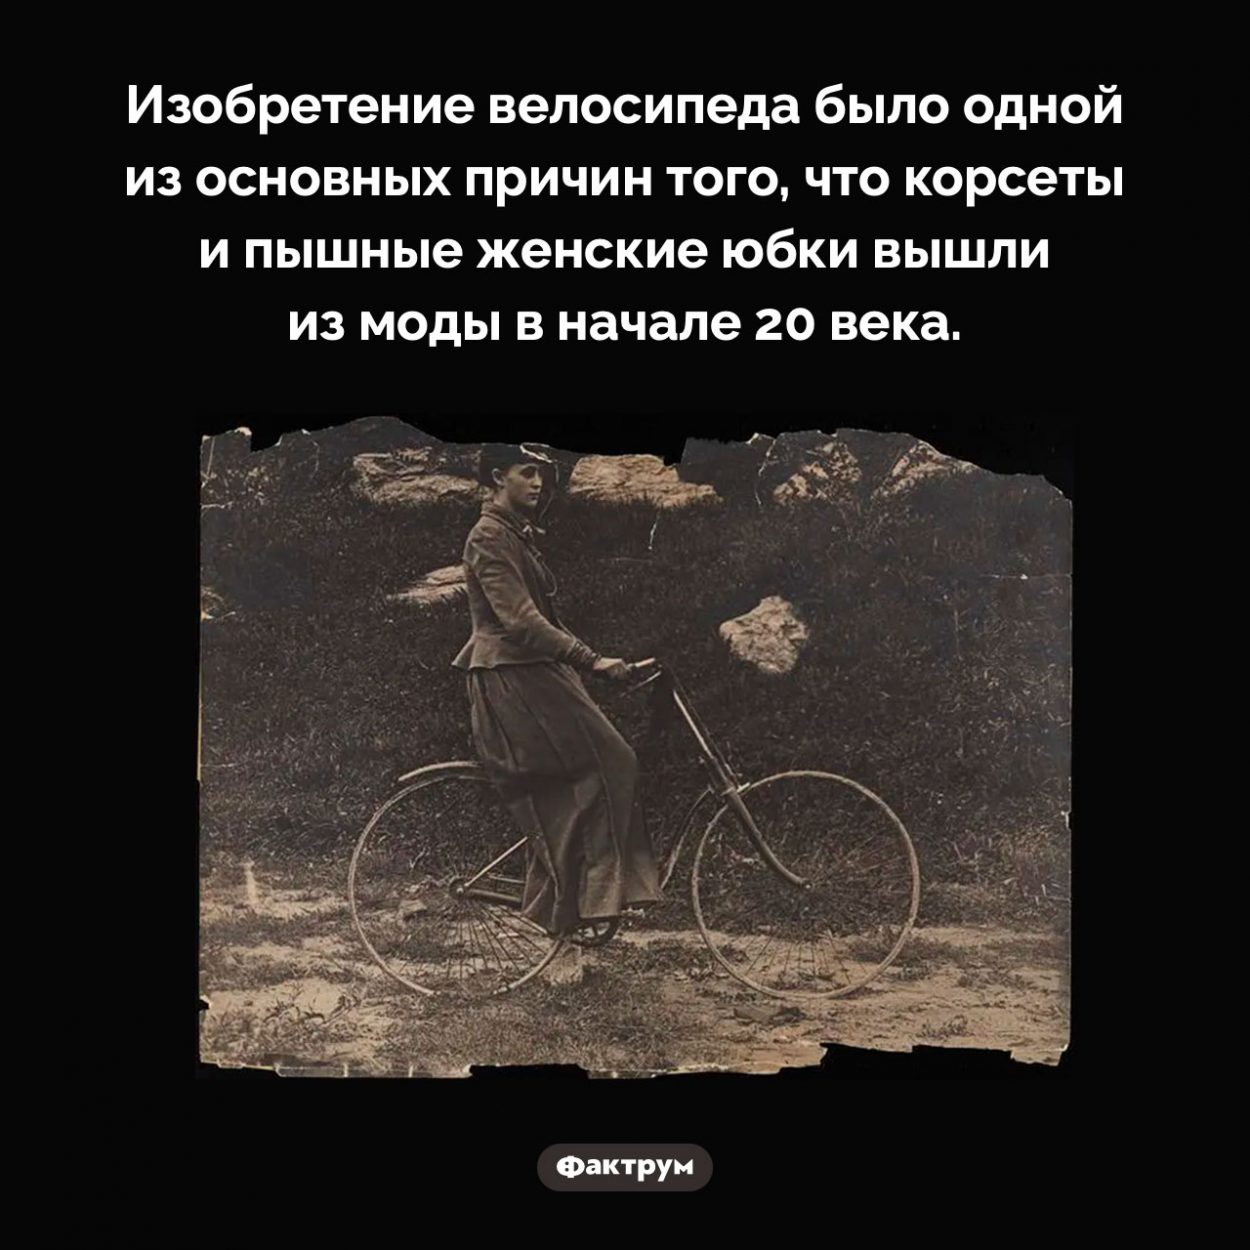 Велосипеды отменили корсеты. Изобретение велосипеда было одной из основных причин того, что корсеты и пышные женские юбки вышли из моды в начале 20 века.